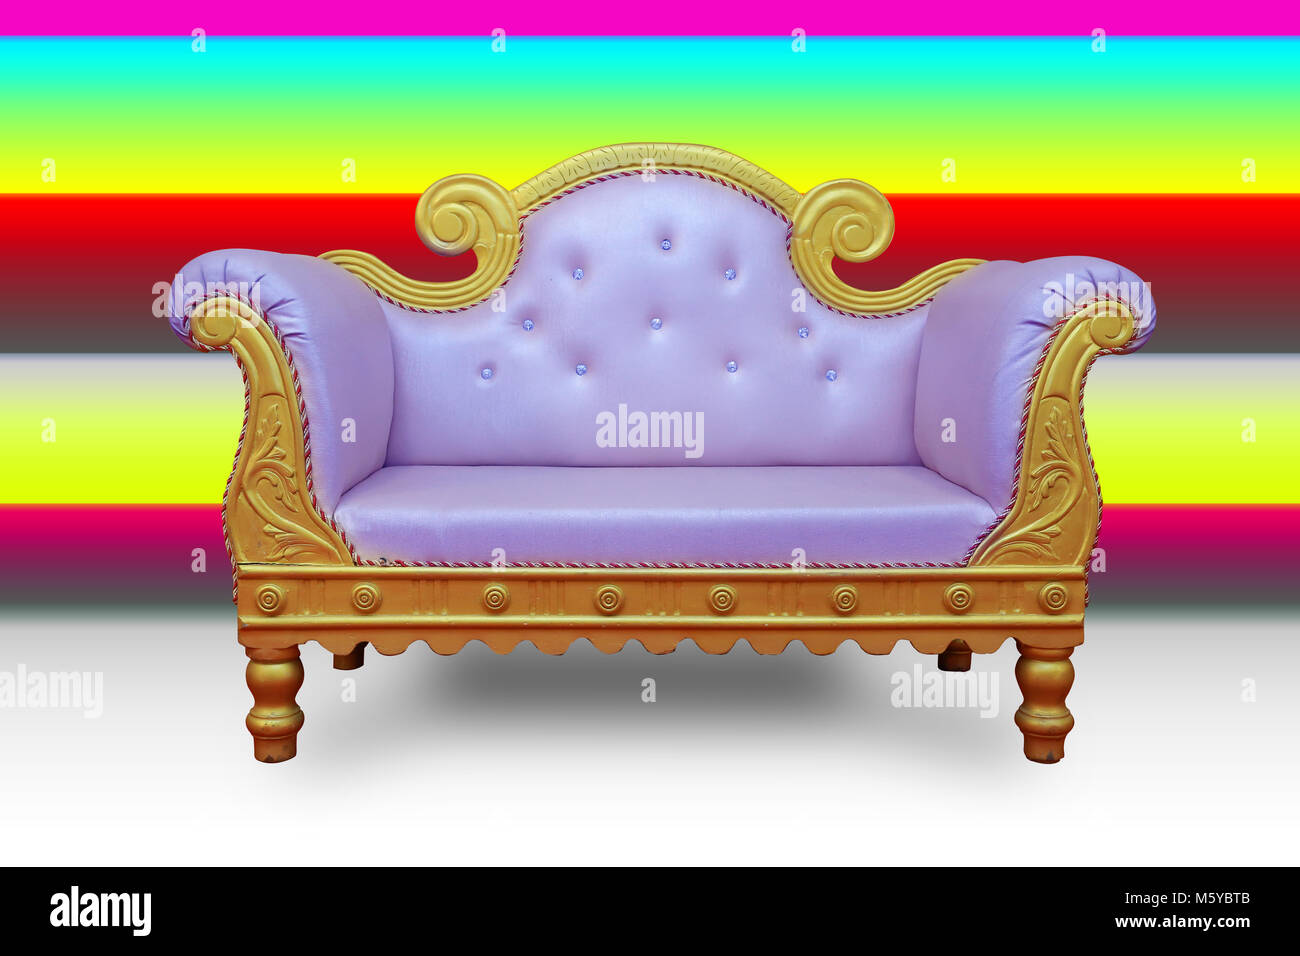 10 mẫu ghế sofa đẹp sang trọng cho phòng khách - Thiết kế xây dựng Pro